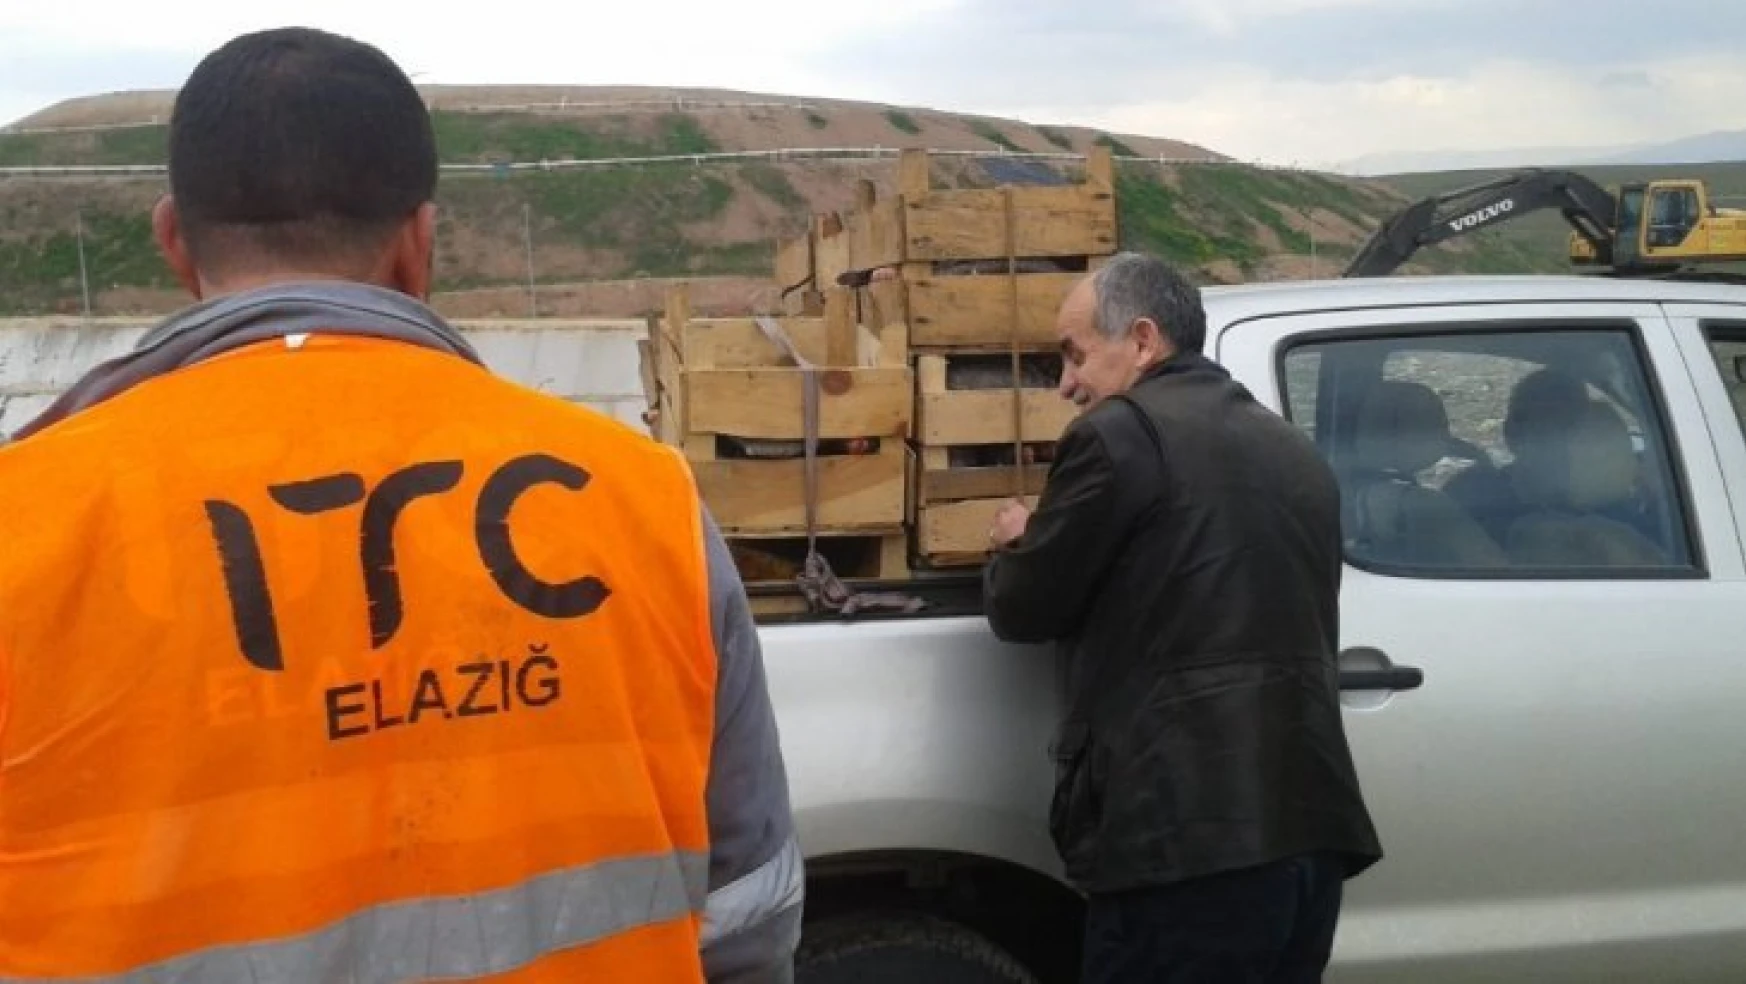 Elazığ'da 900 kilo kaçak avlanan balık yakalandı